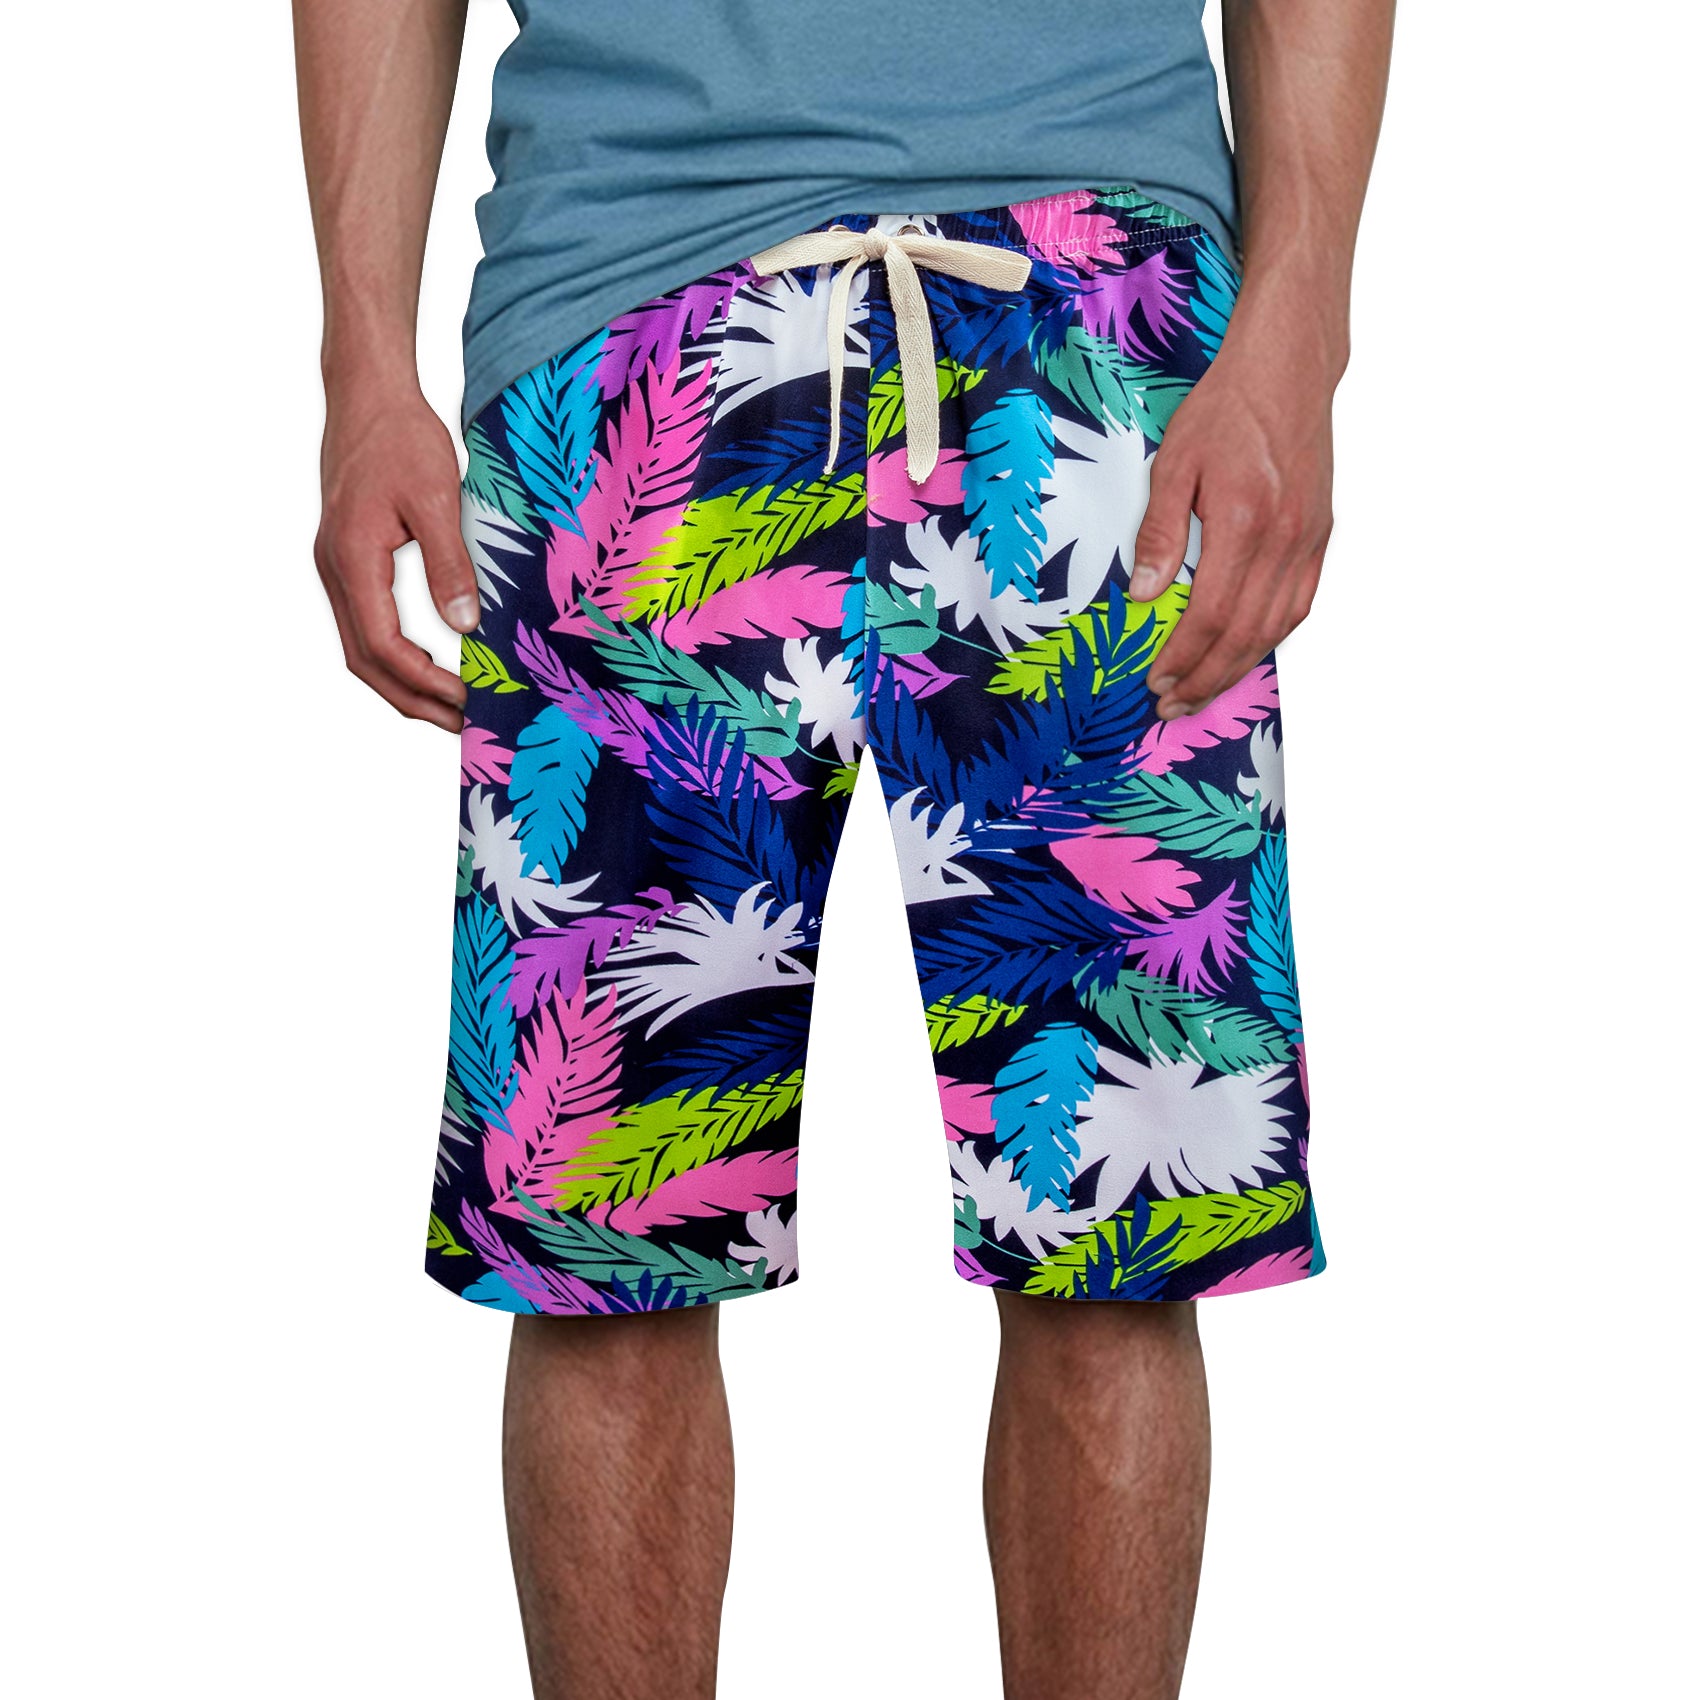 Mens Colorful Floral Print Vacation Shorts